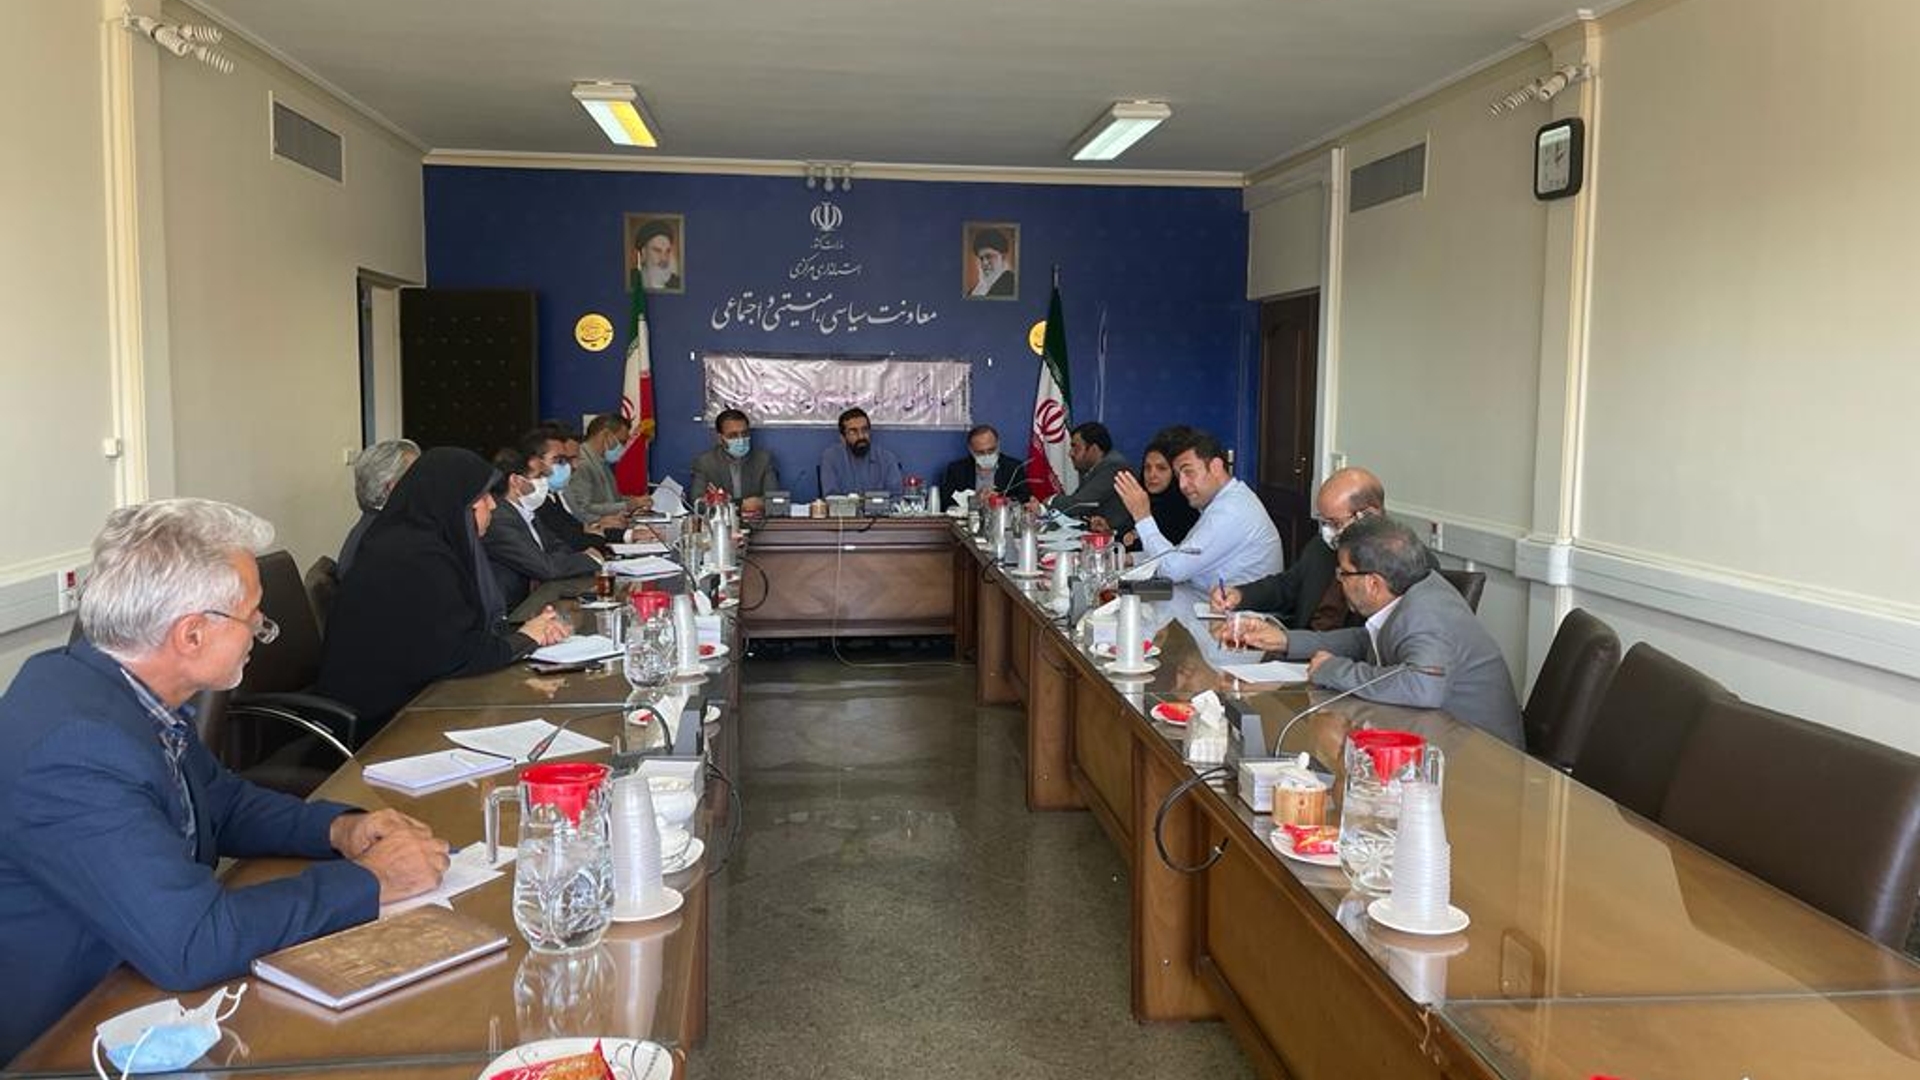 ششمین جلسه هماهنگي سفر ریاست جمهوری به استان مركزي در روز شنبه مورخ 25-04-1401  برگزار گردید.